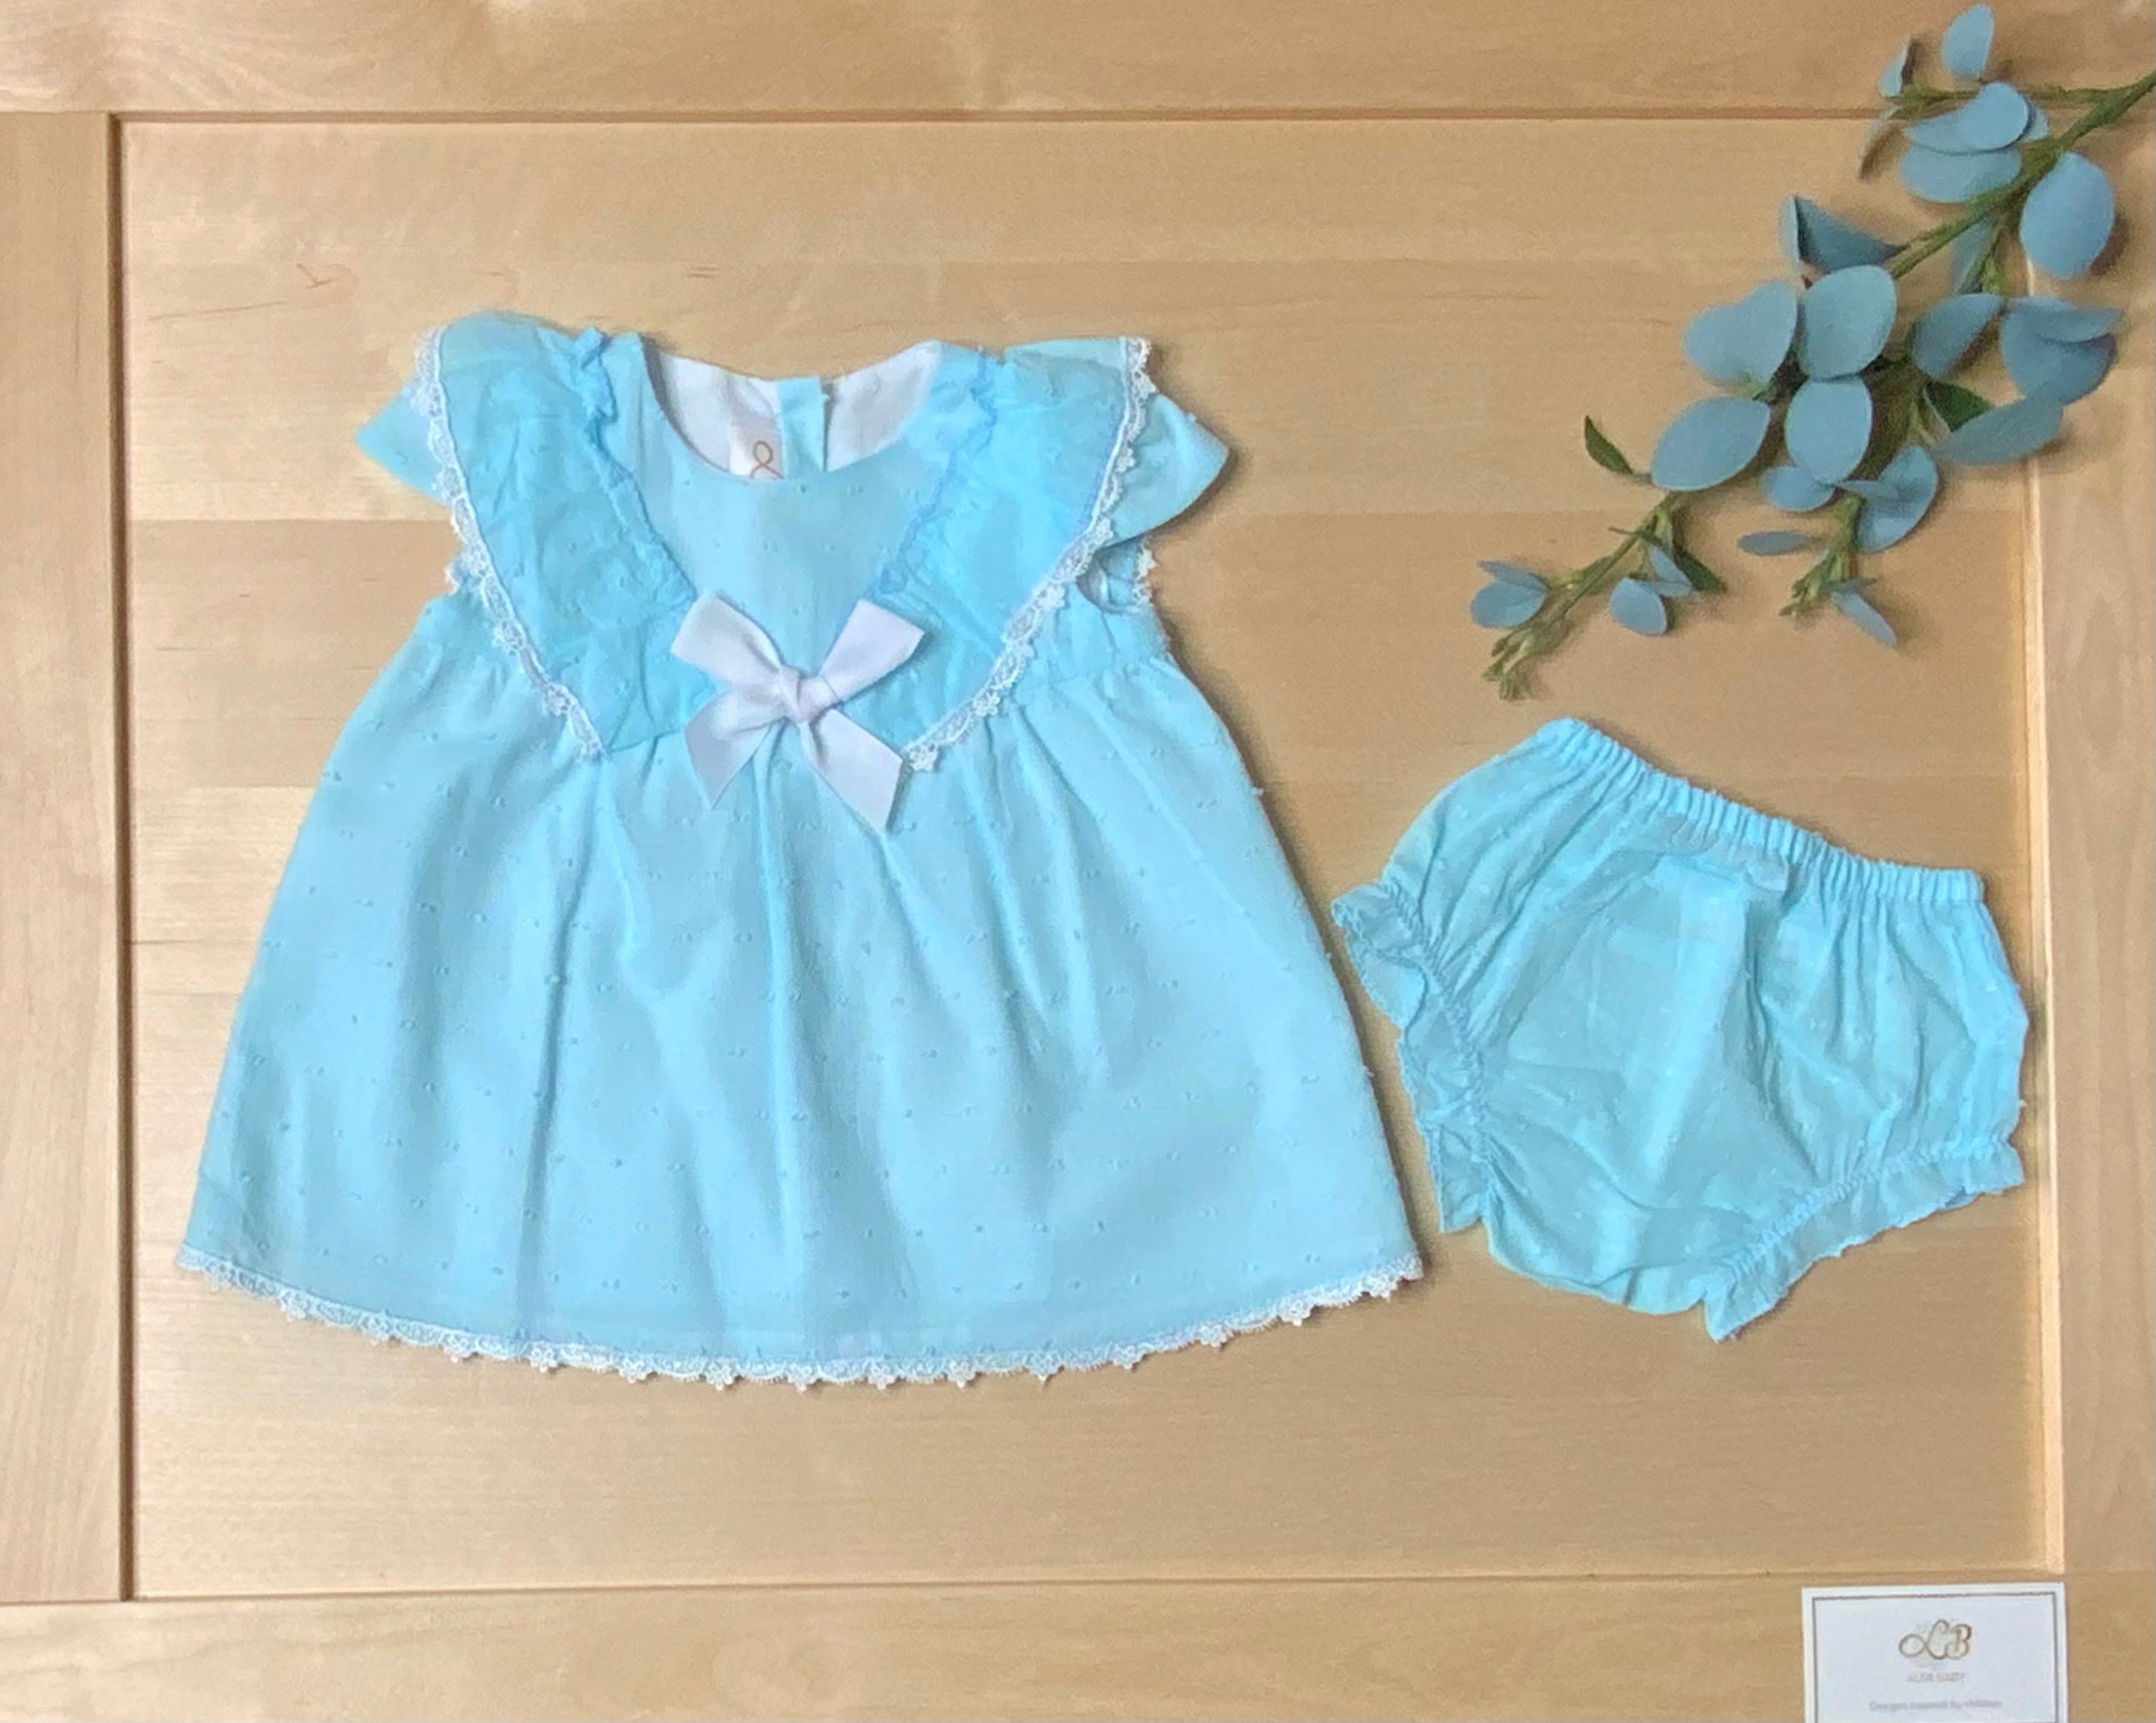 Newborn Baby-Toddler Dress- Fluttered Sleeves- Blue Girl's Dress- Bloomer Set-Children's Clothing Store